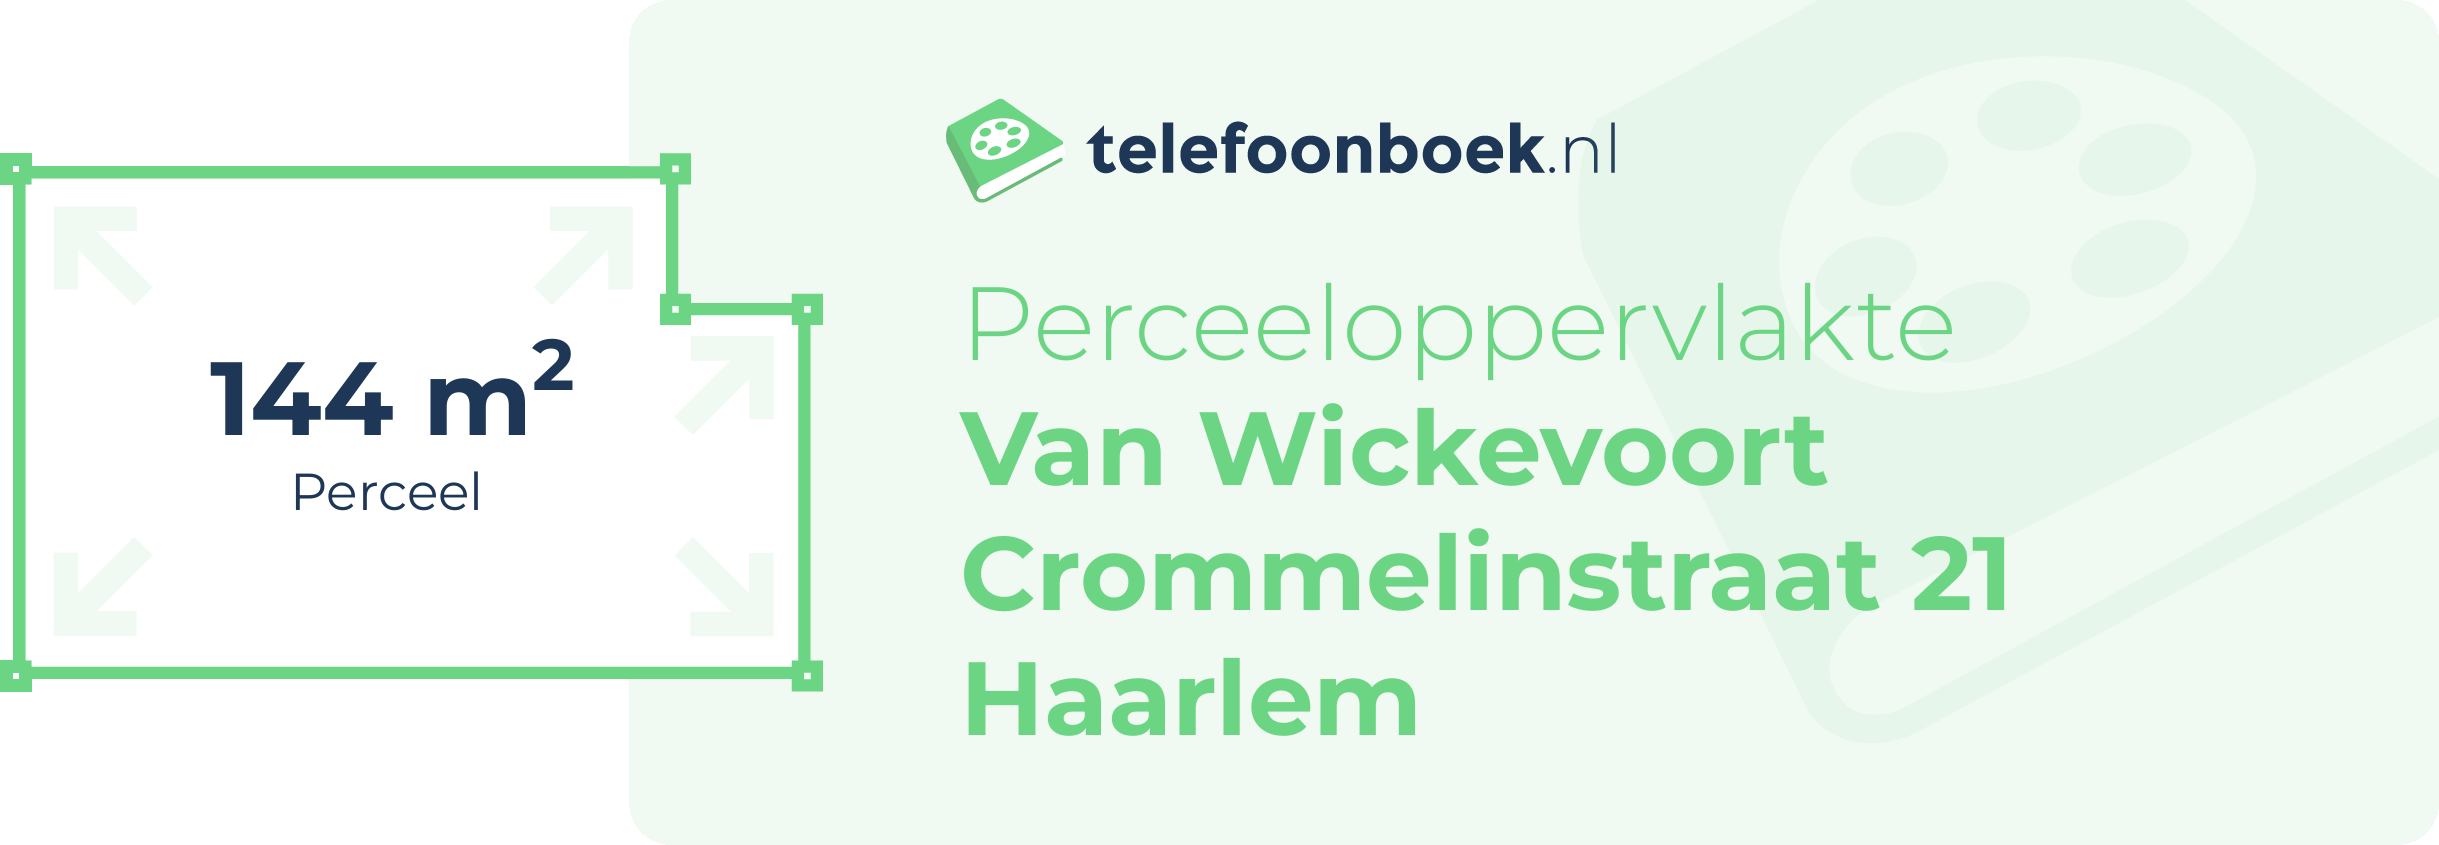 Perceeloppervlakte Van Wickevoort Crommelinstraat 21 Haarlem